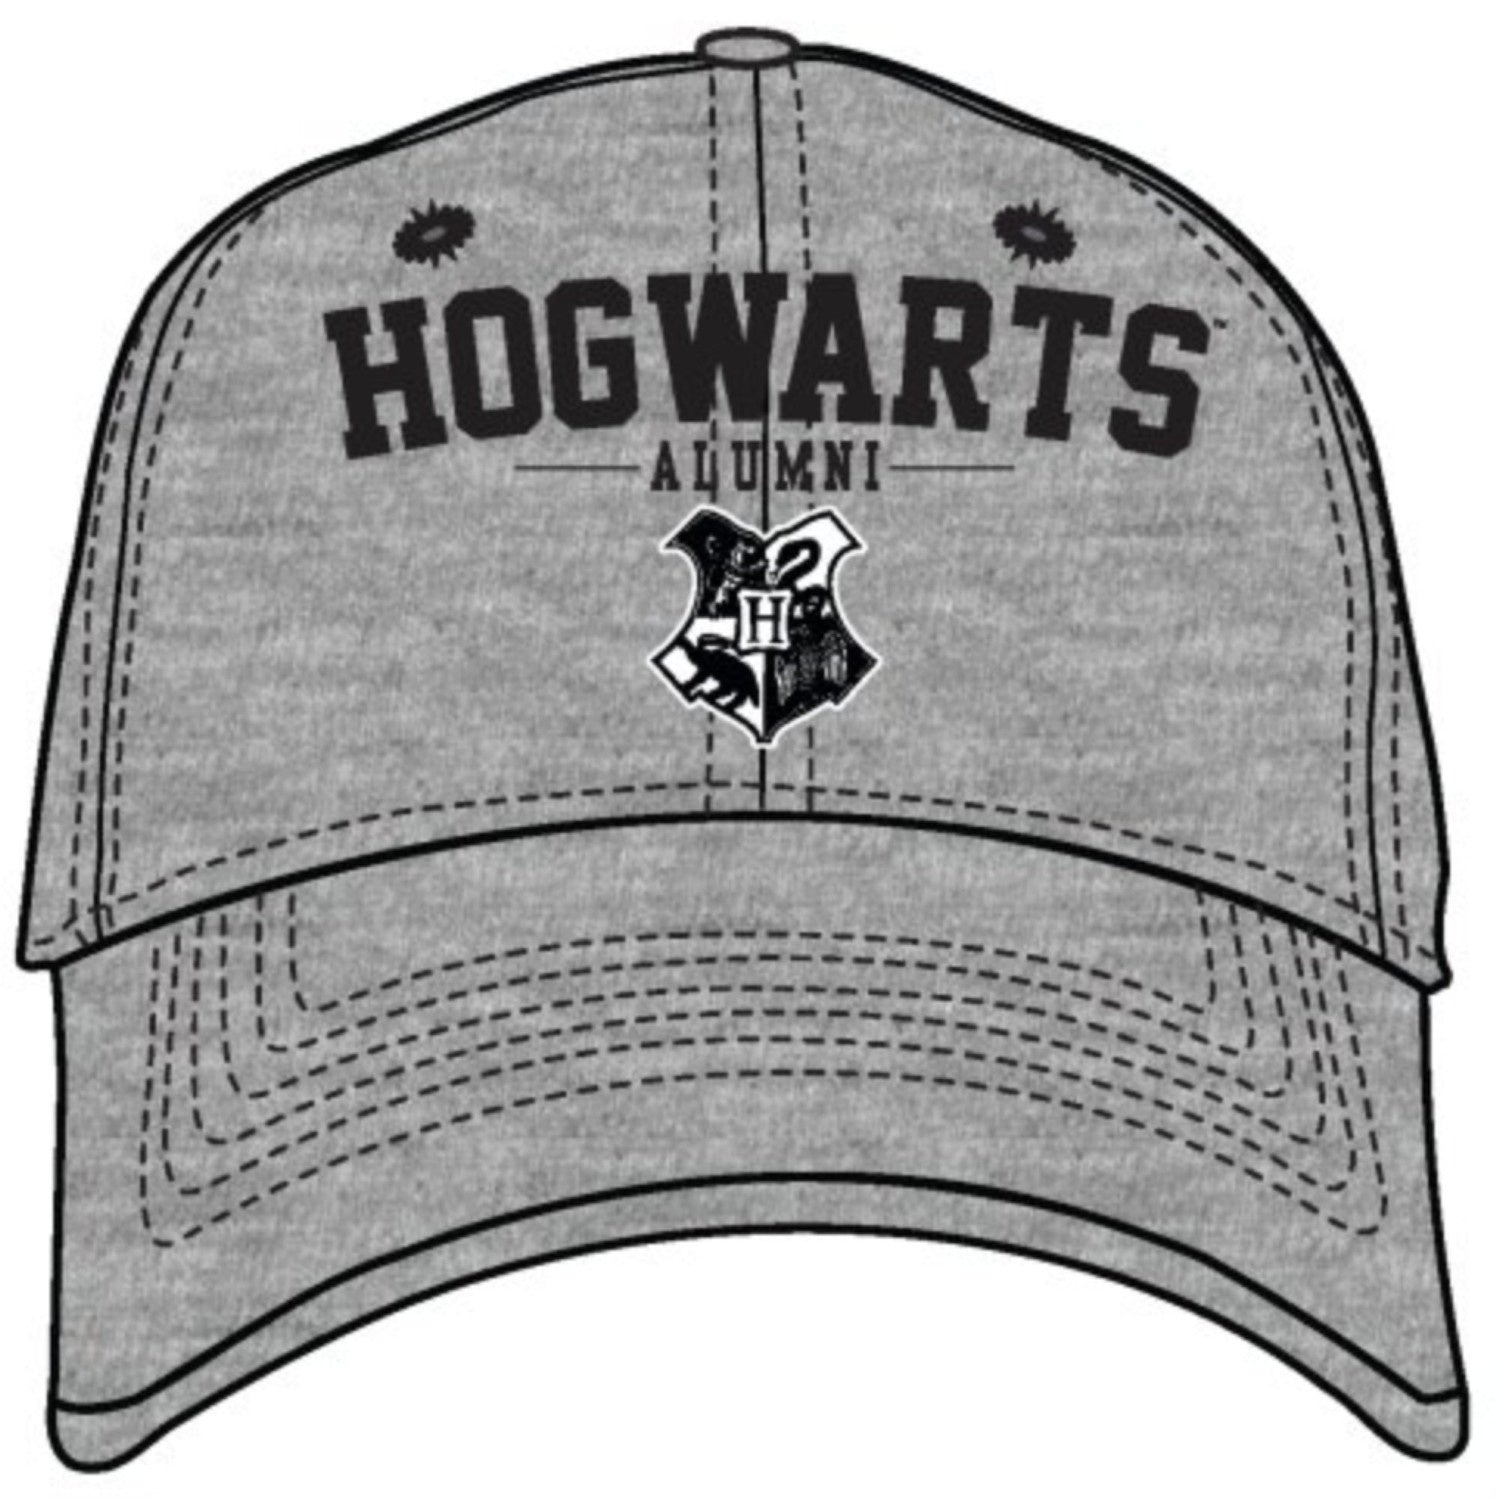 Magical World of Hogwarts Alumni Gray Adult Hat